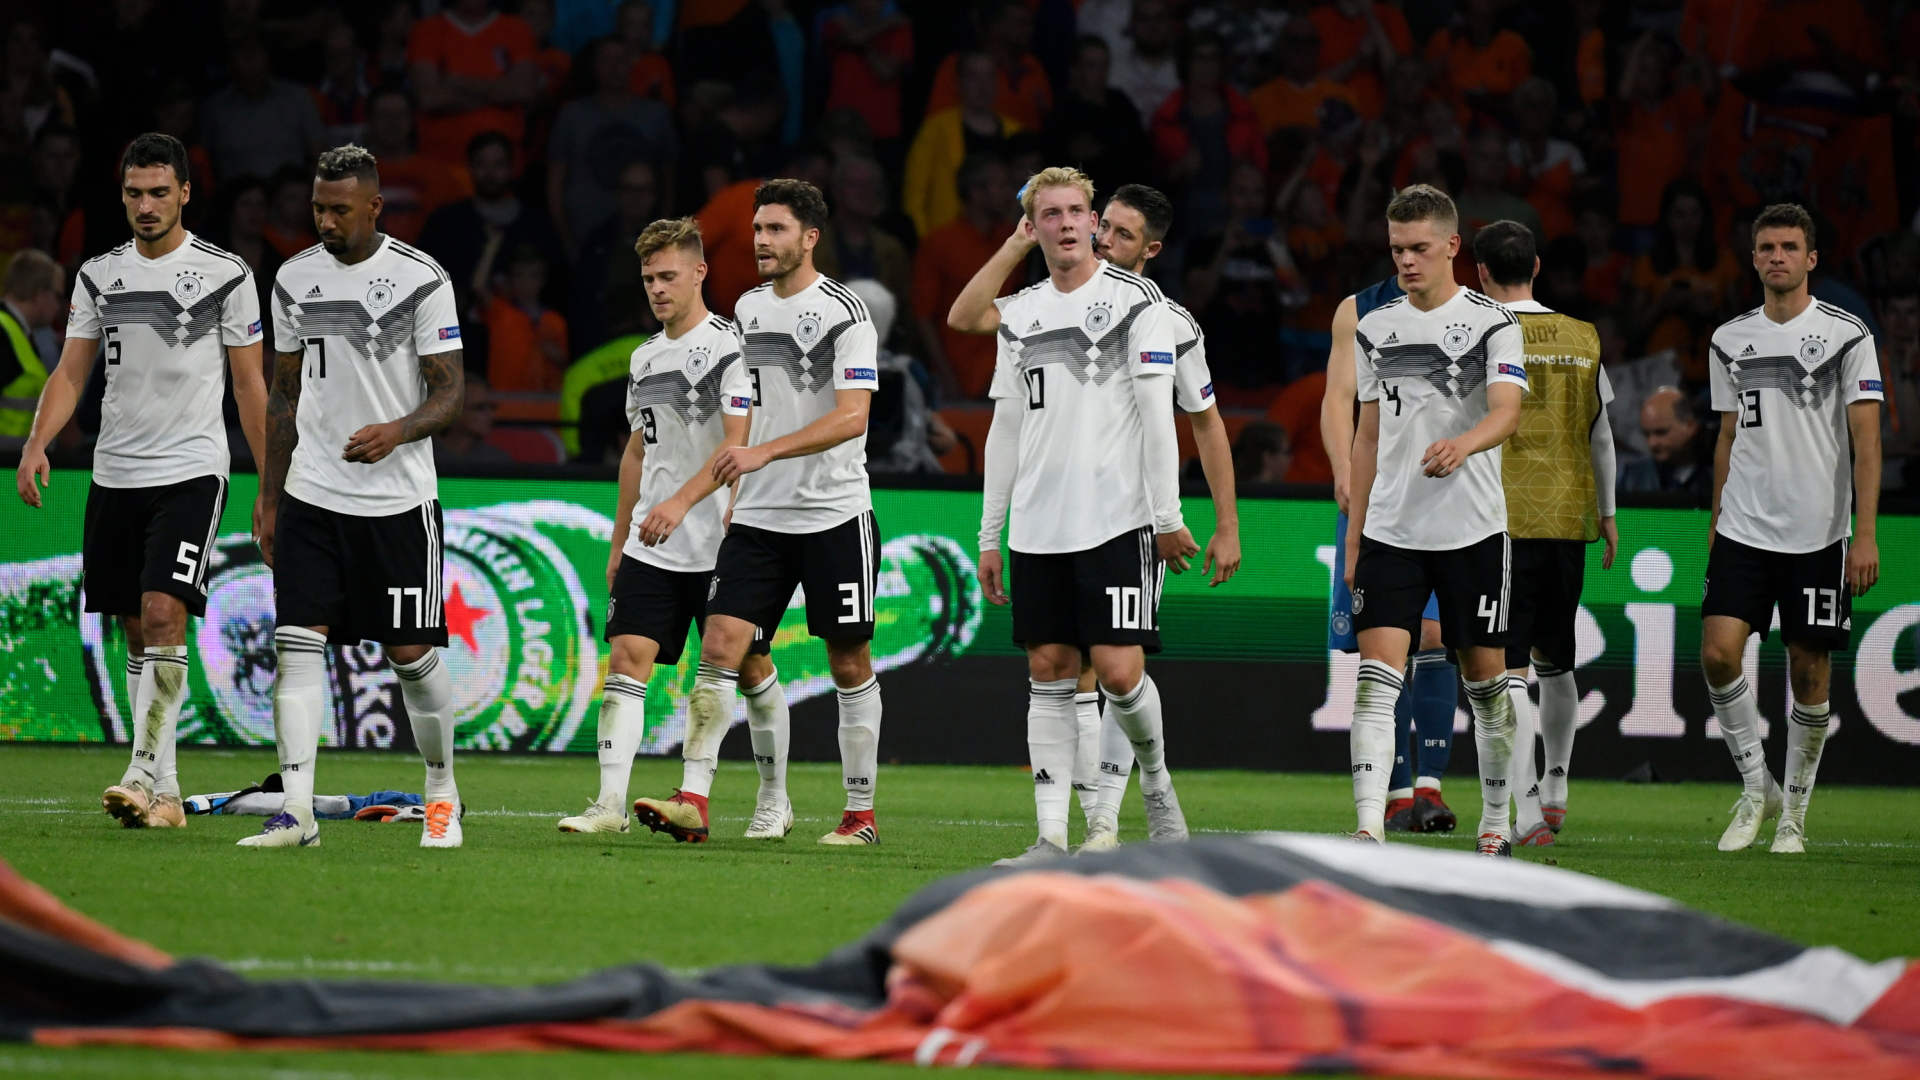 Die deutschen Fußball-Nationalspieler gehen nach der 0:3-Niederlage enttäuscht vom Platz. | Bildquelle: dpa